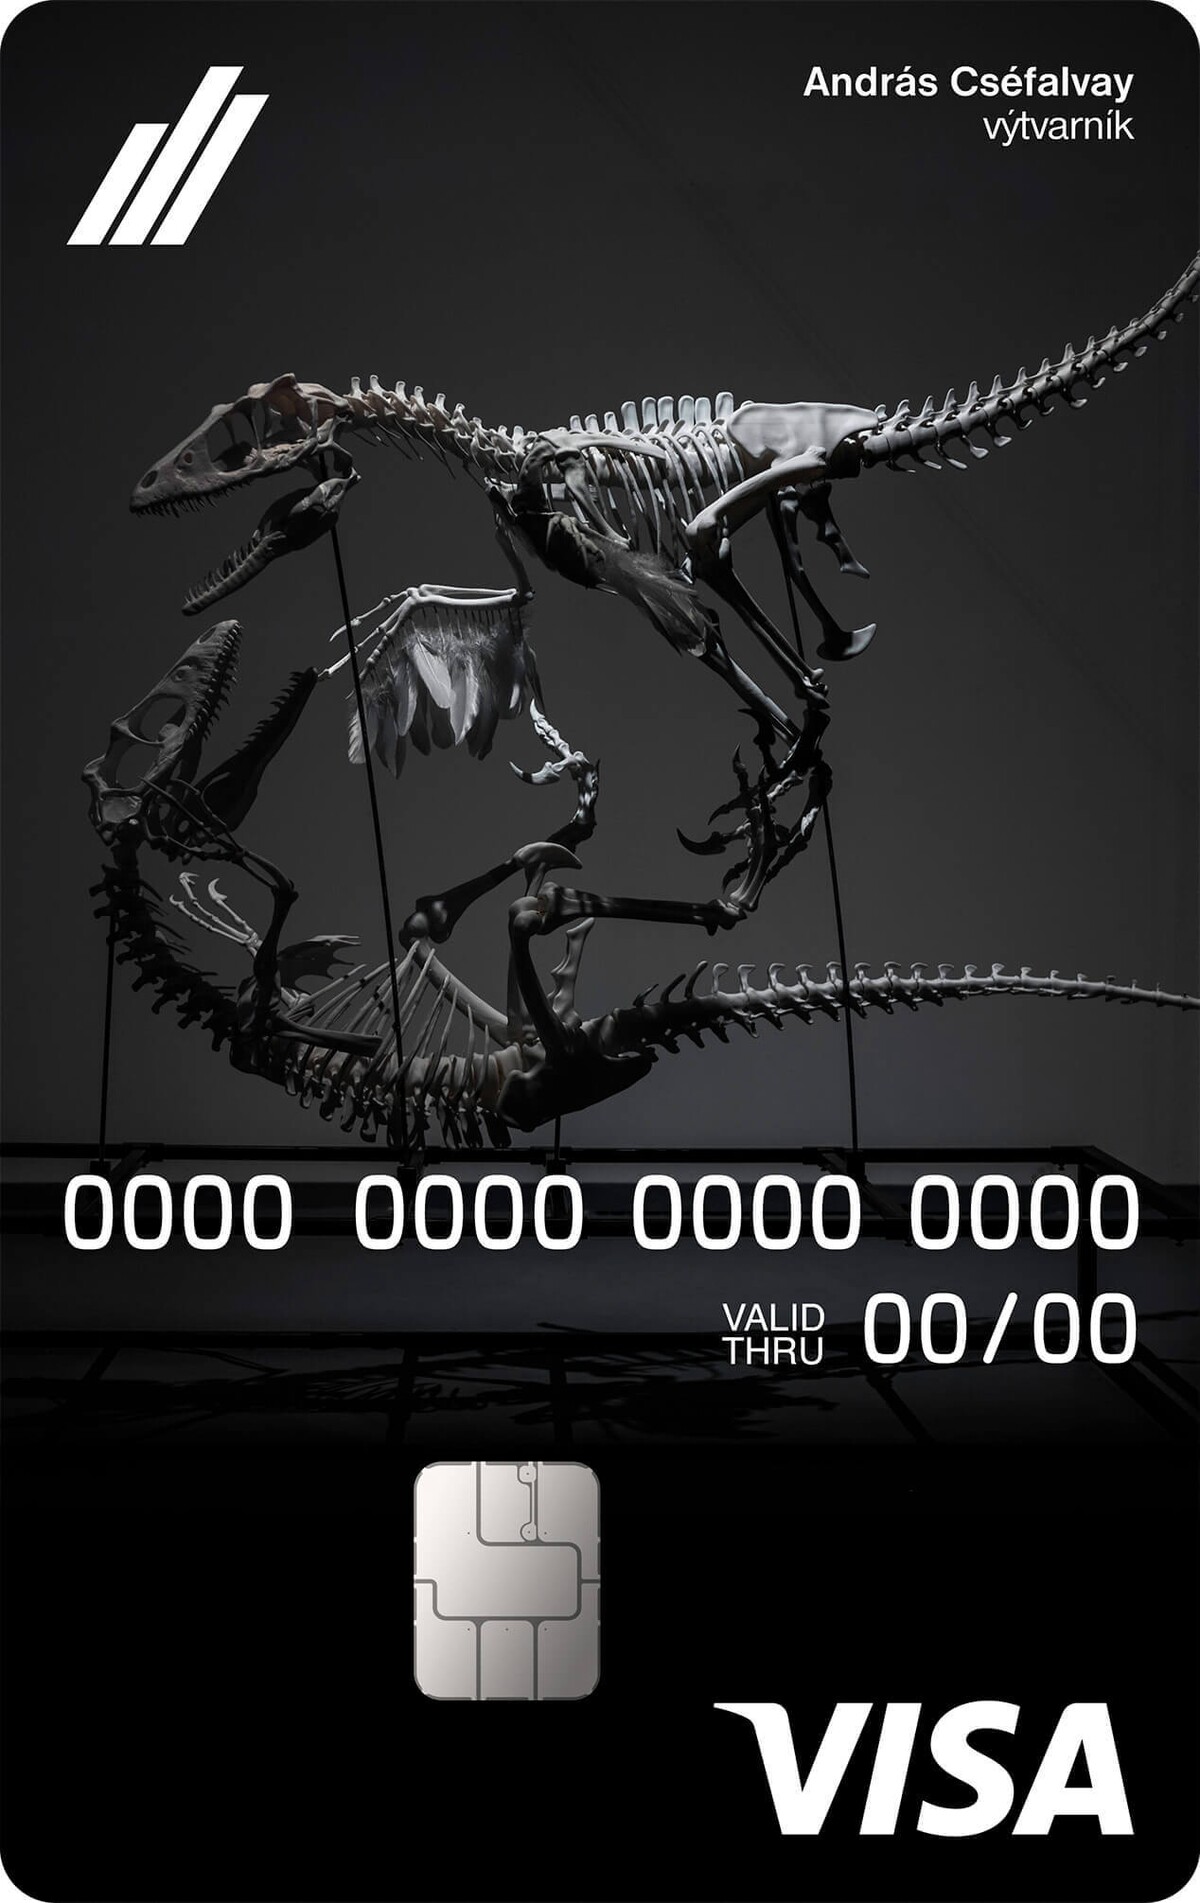 Súkromná debetná karta – Karta odkazuje na Triumph of Feathers, model bojujúcich dinosaurov vytvorený 3D tlačou od Andrása Cséfalvaya